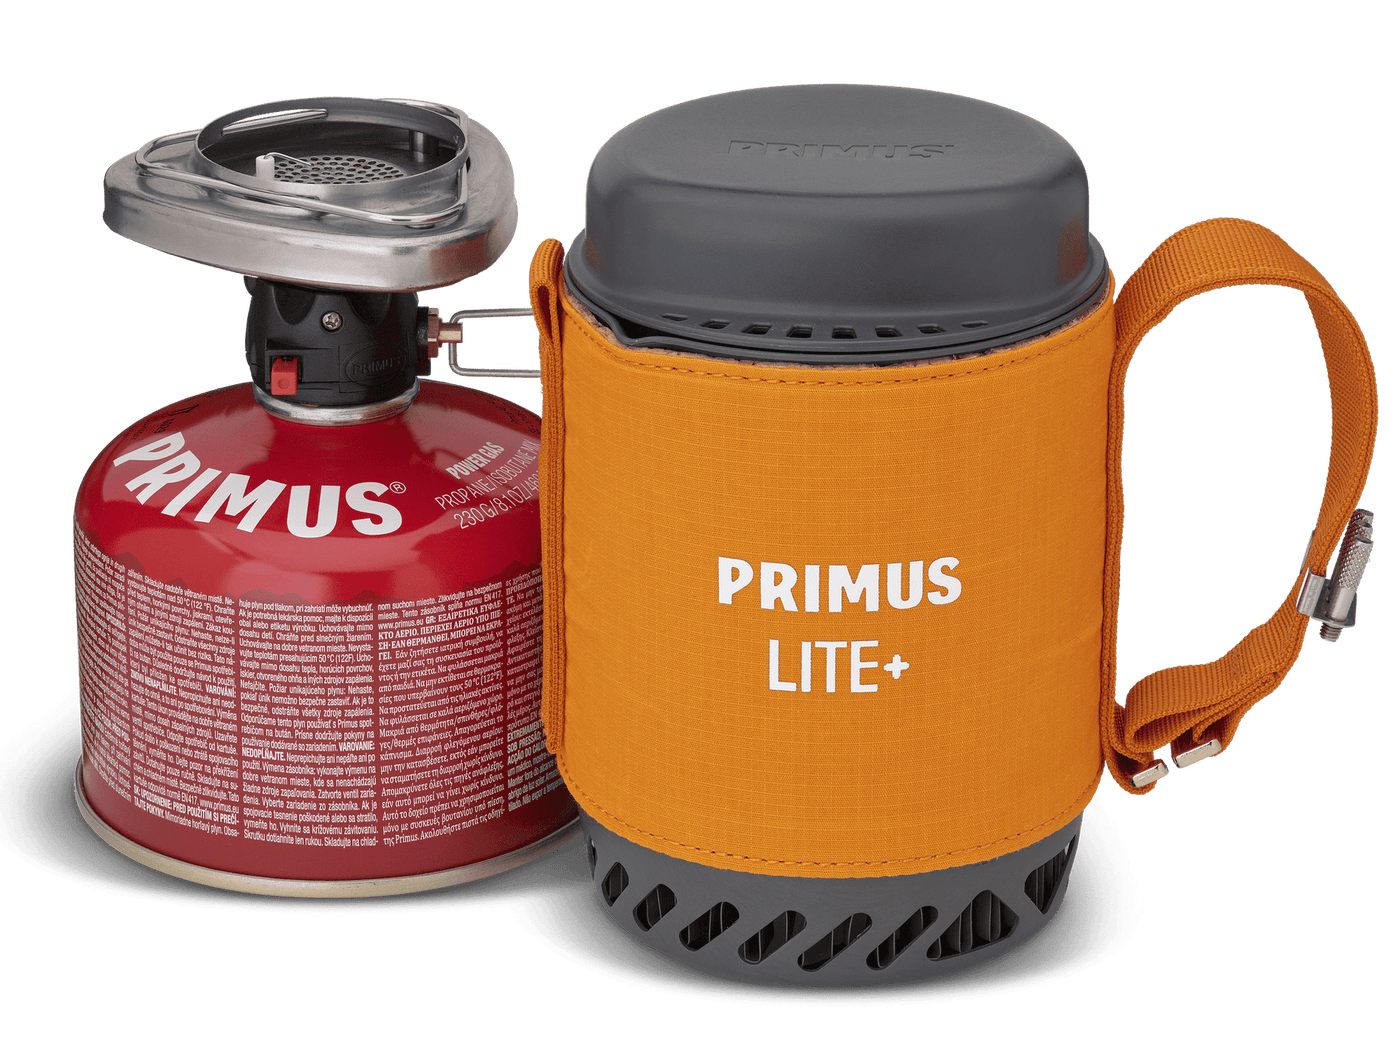 Primus Lite Plus Stove System Orange 1500 Watt